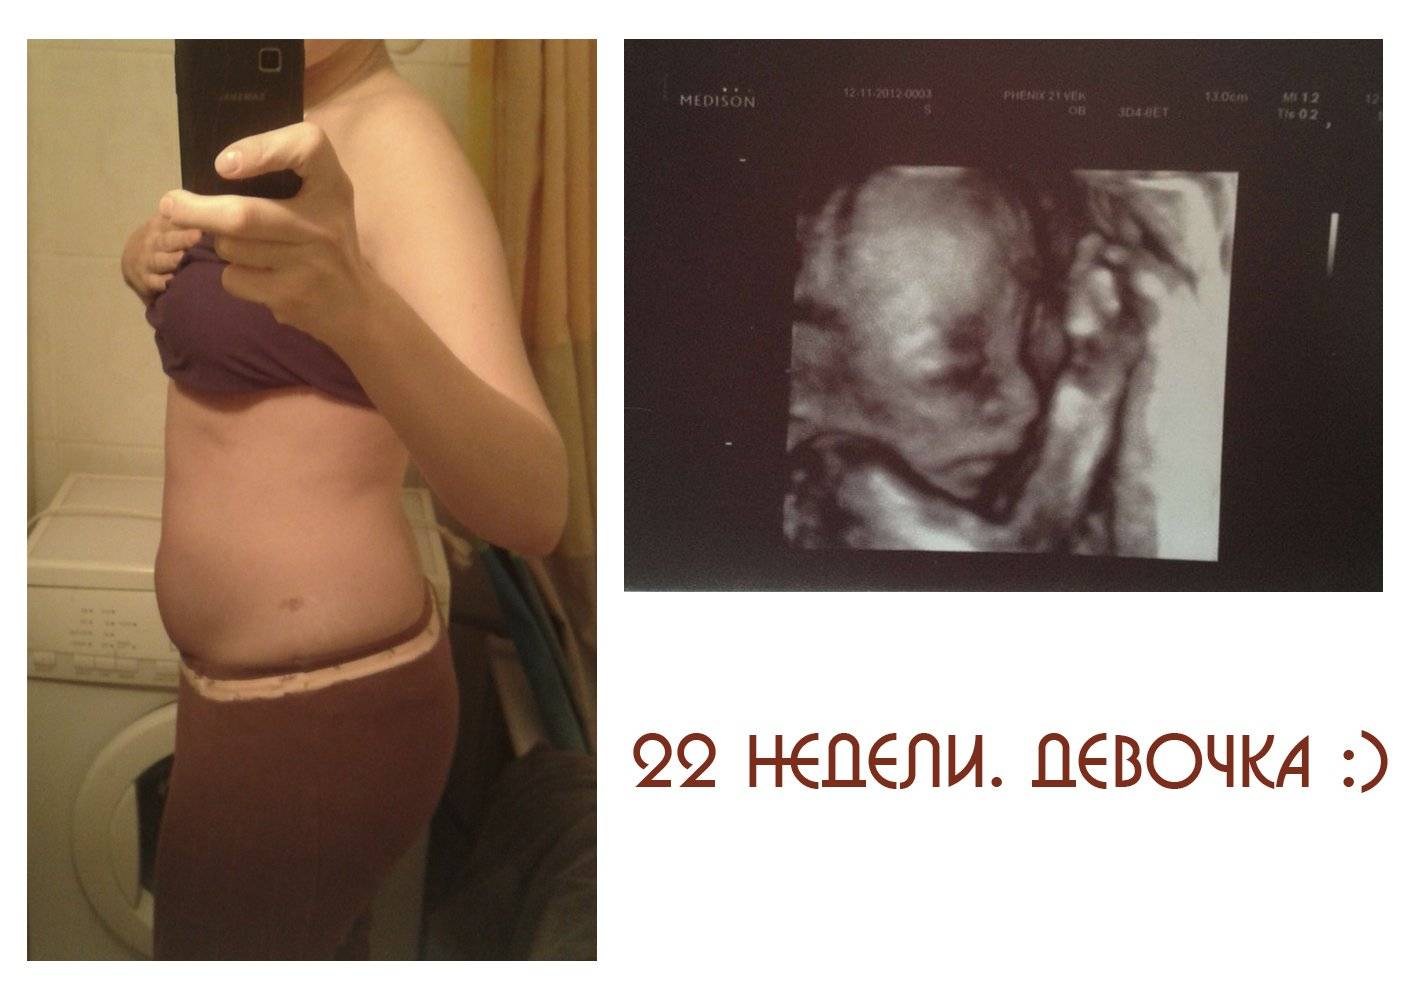 Скрининг при беременности: все об узи беременных * клиника диана в санкт-петербурге